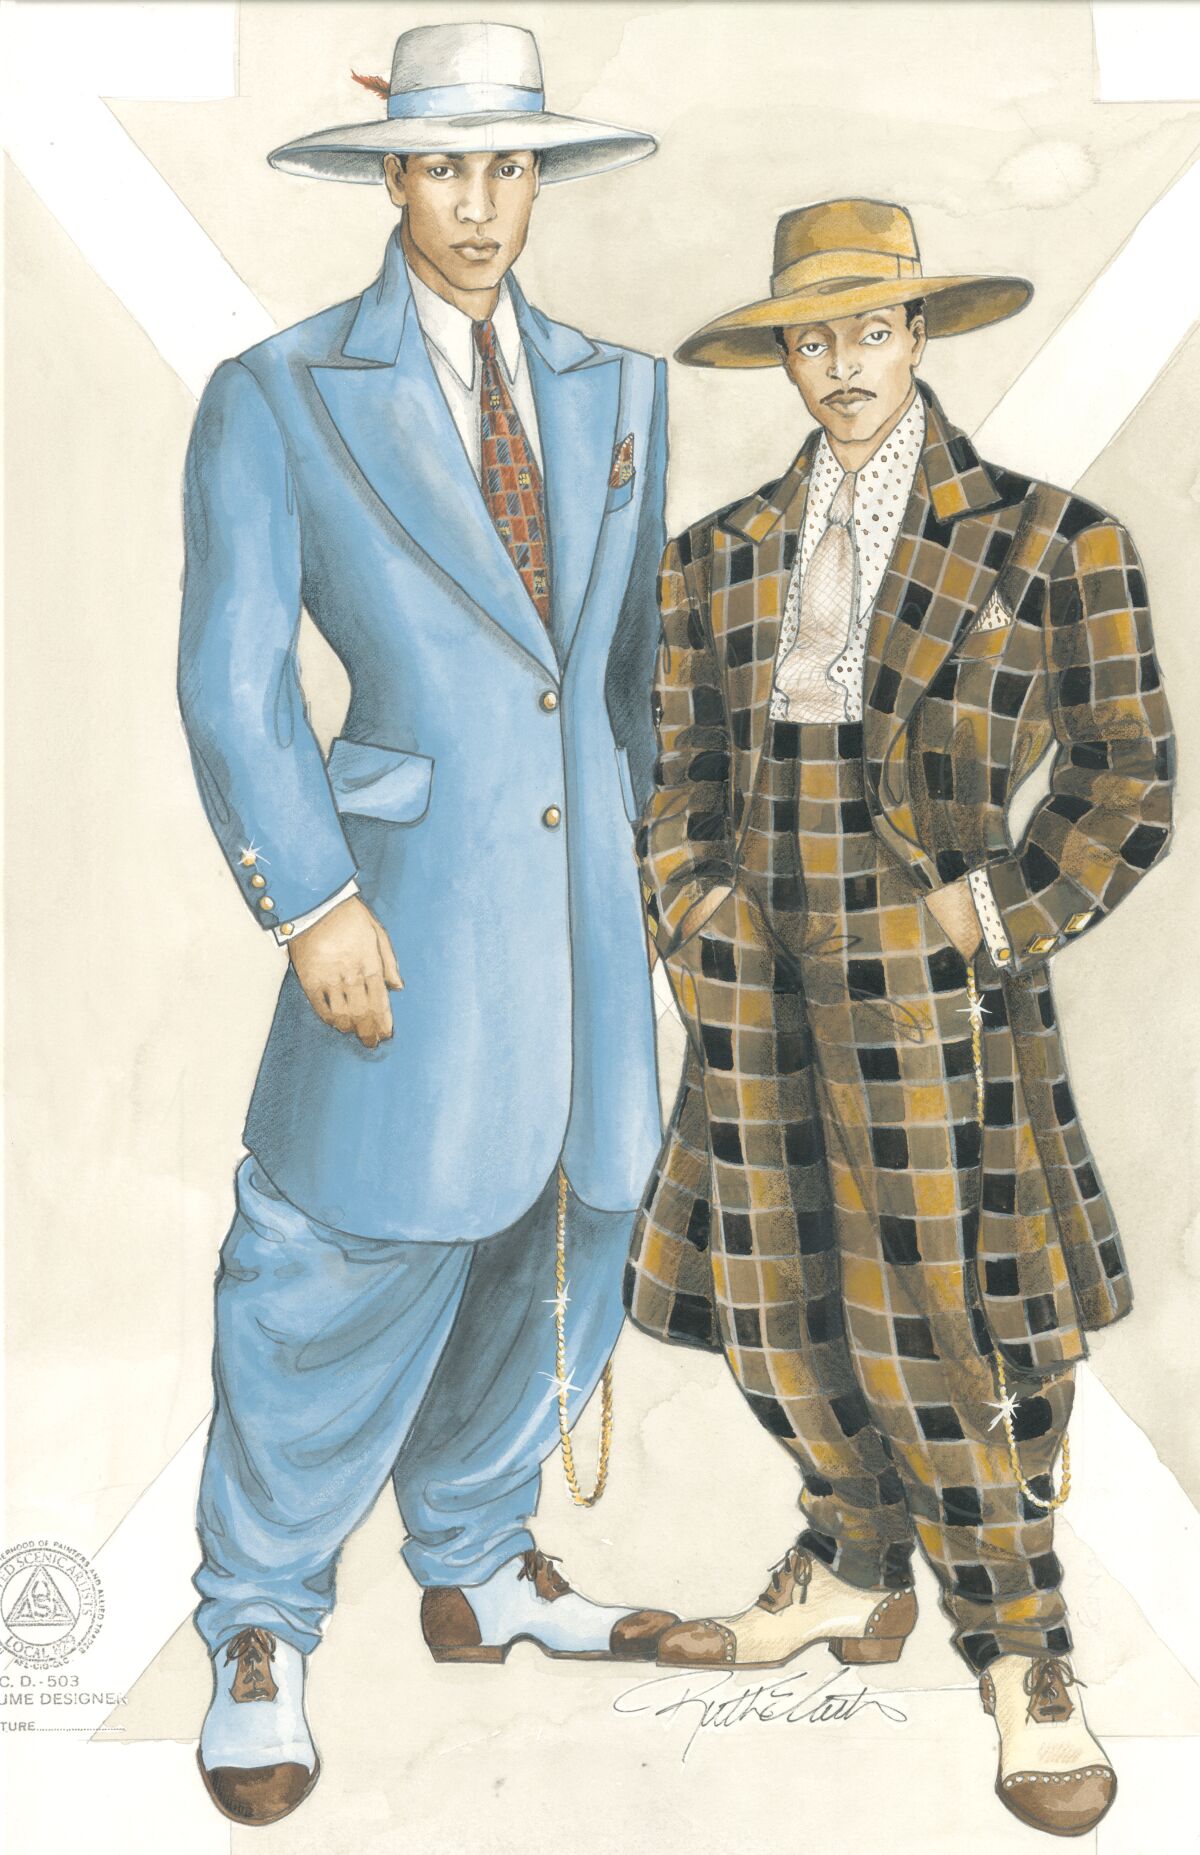 ફિલ્મમાં માલ્કમ એક્સ (ડેન્ઝેલ વોશિંગ્ટન) અને શોર્ટી (સ્પાઈક લી) દ્વારા પહેરવામાં આવનાર કોસ્ચ્યુમ માટેનું સ્કેચ "માલ્કમ એક્સ."